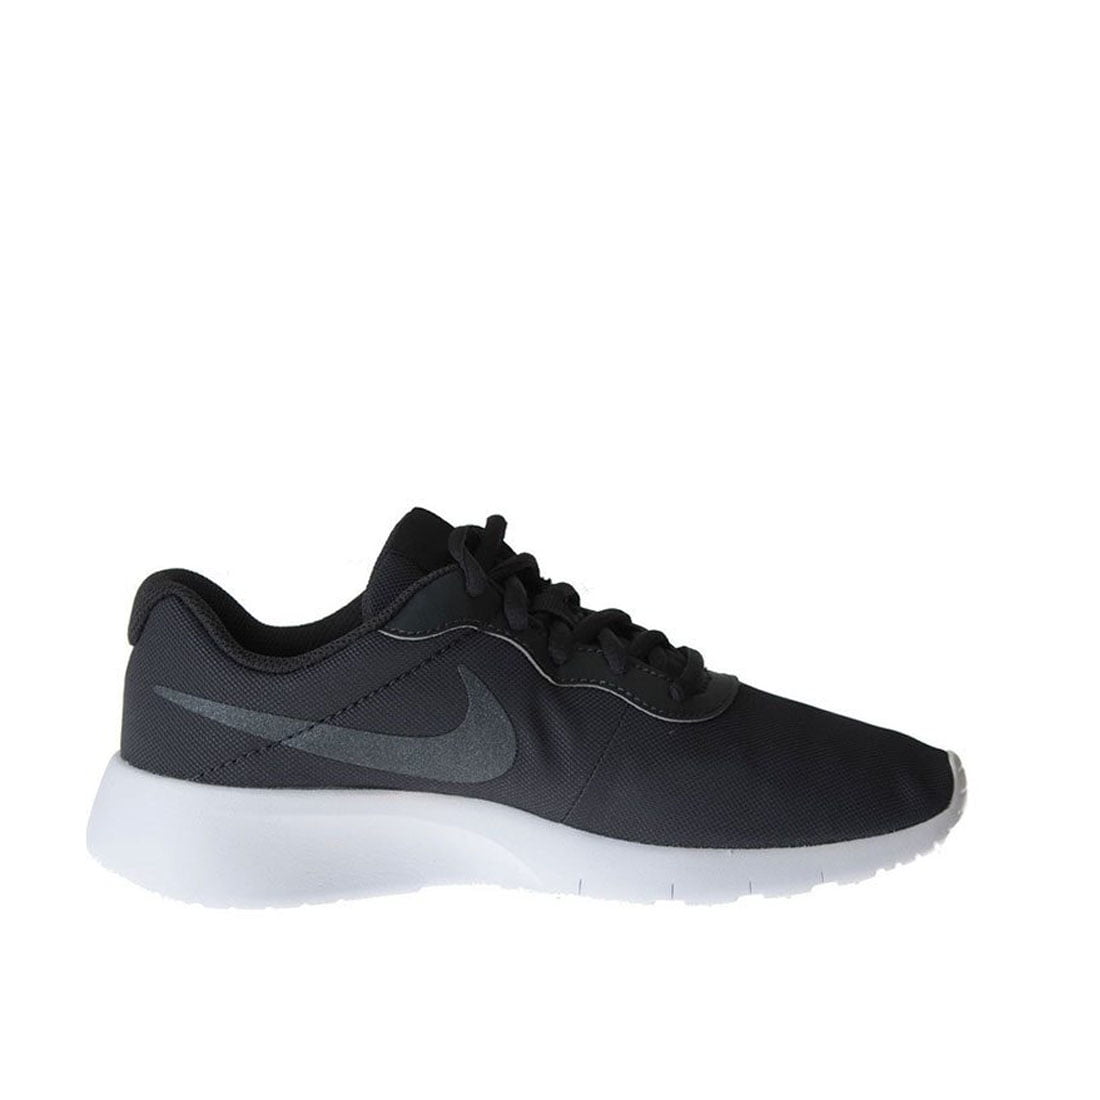 Nike Tanjun (GS) Men/Adult shoe size 5.5 Casual 818384-005 - Walmart.com